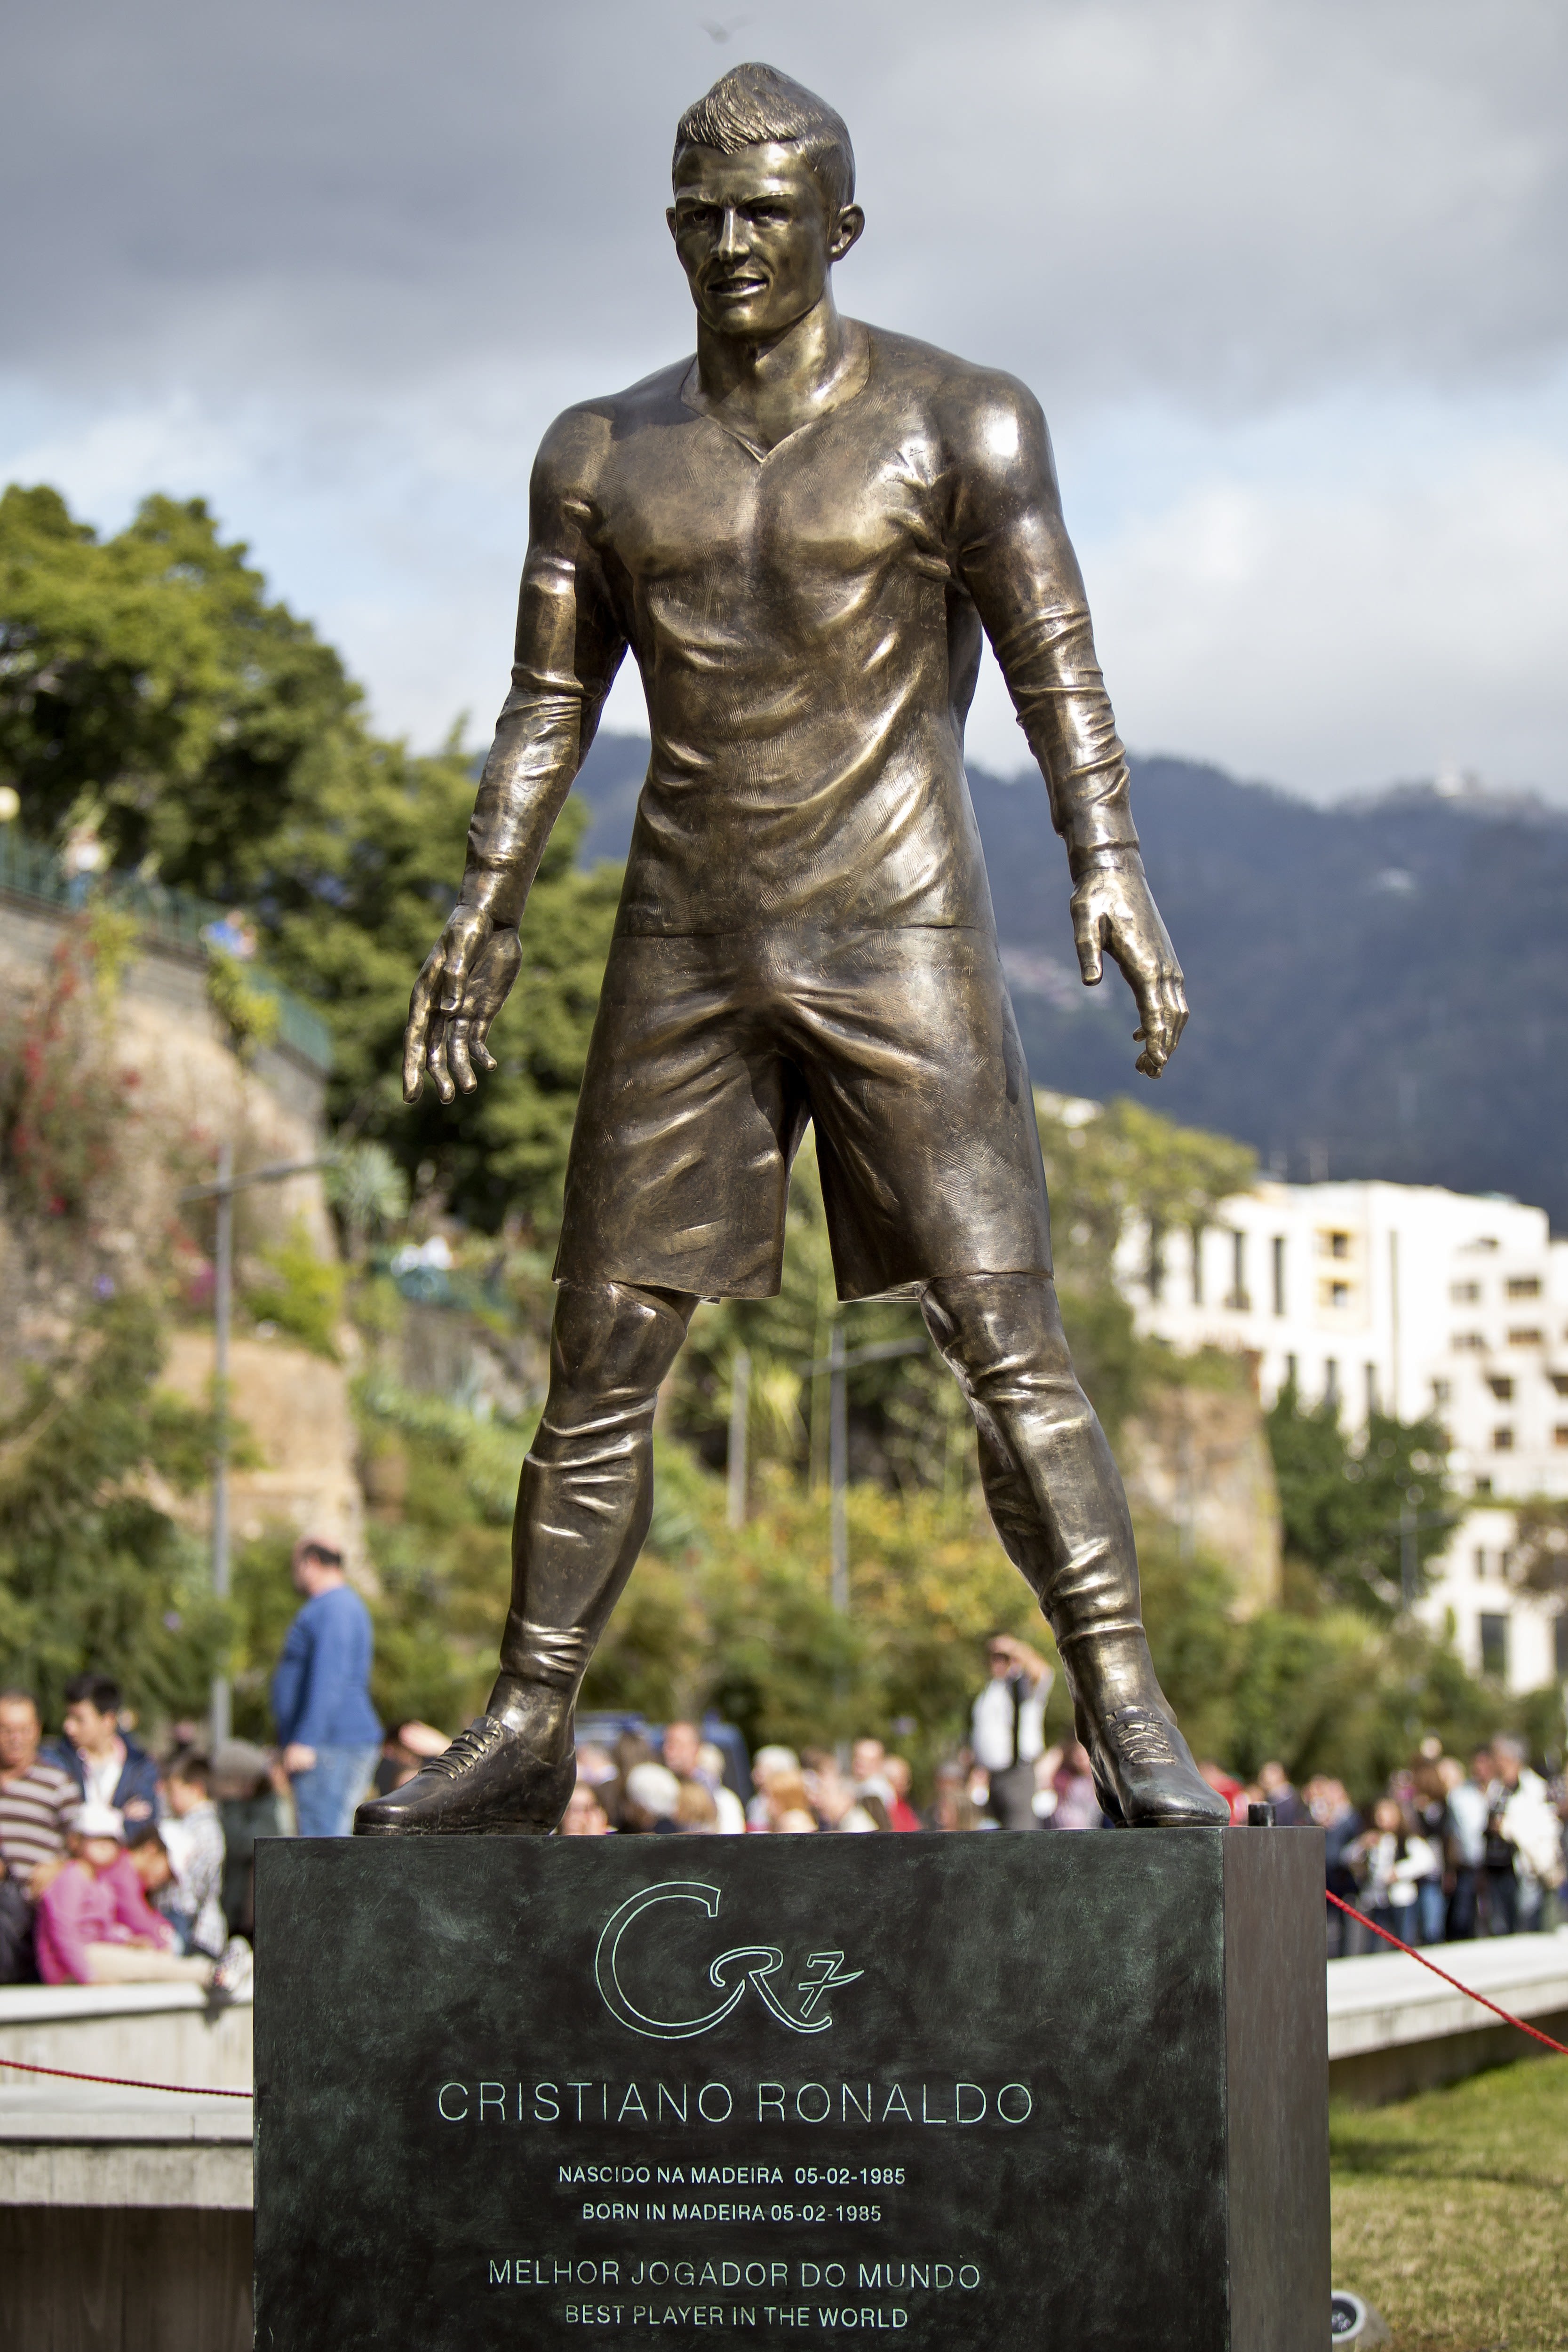 Cristiano Ronaldo immortalized in bronze statue